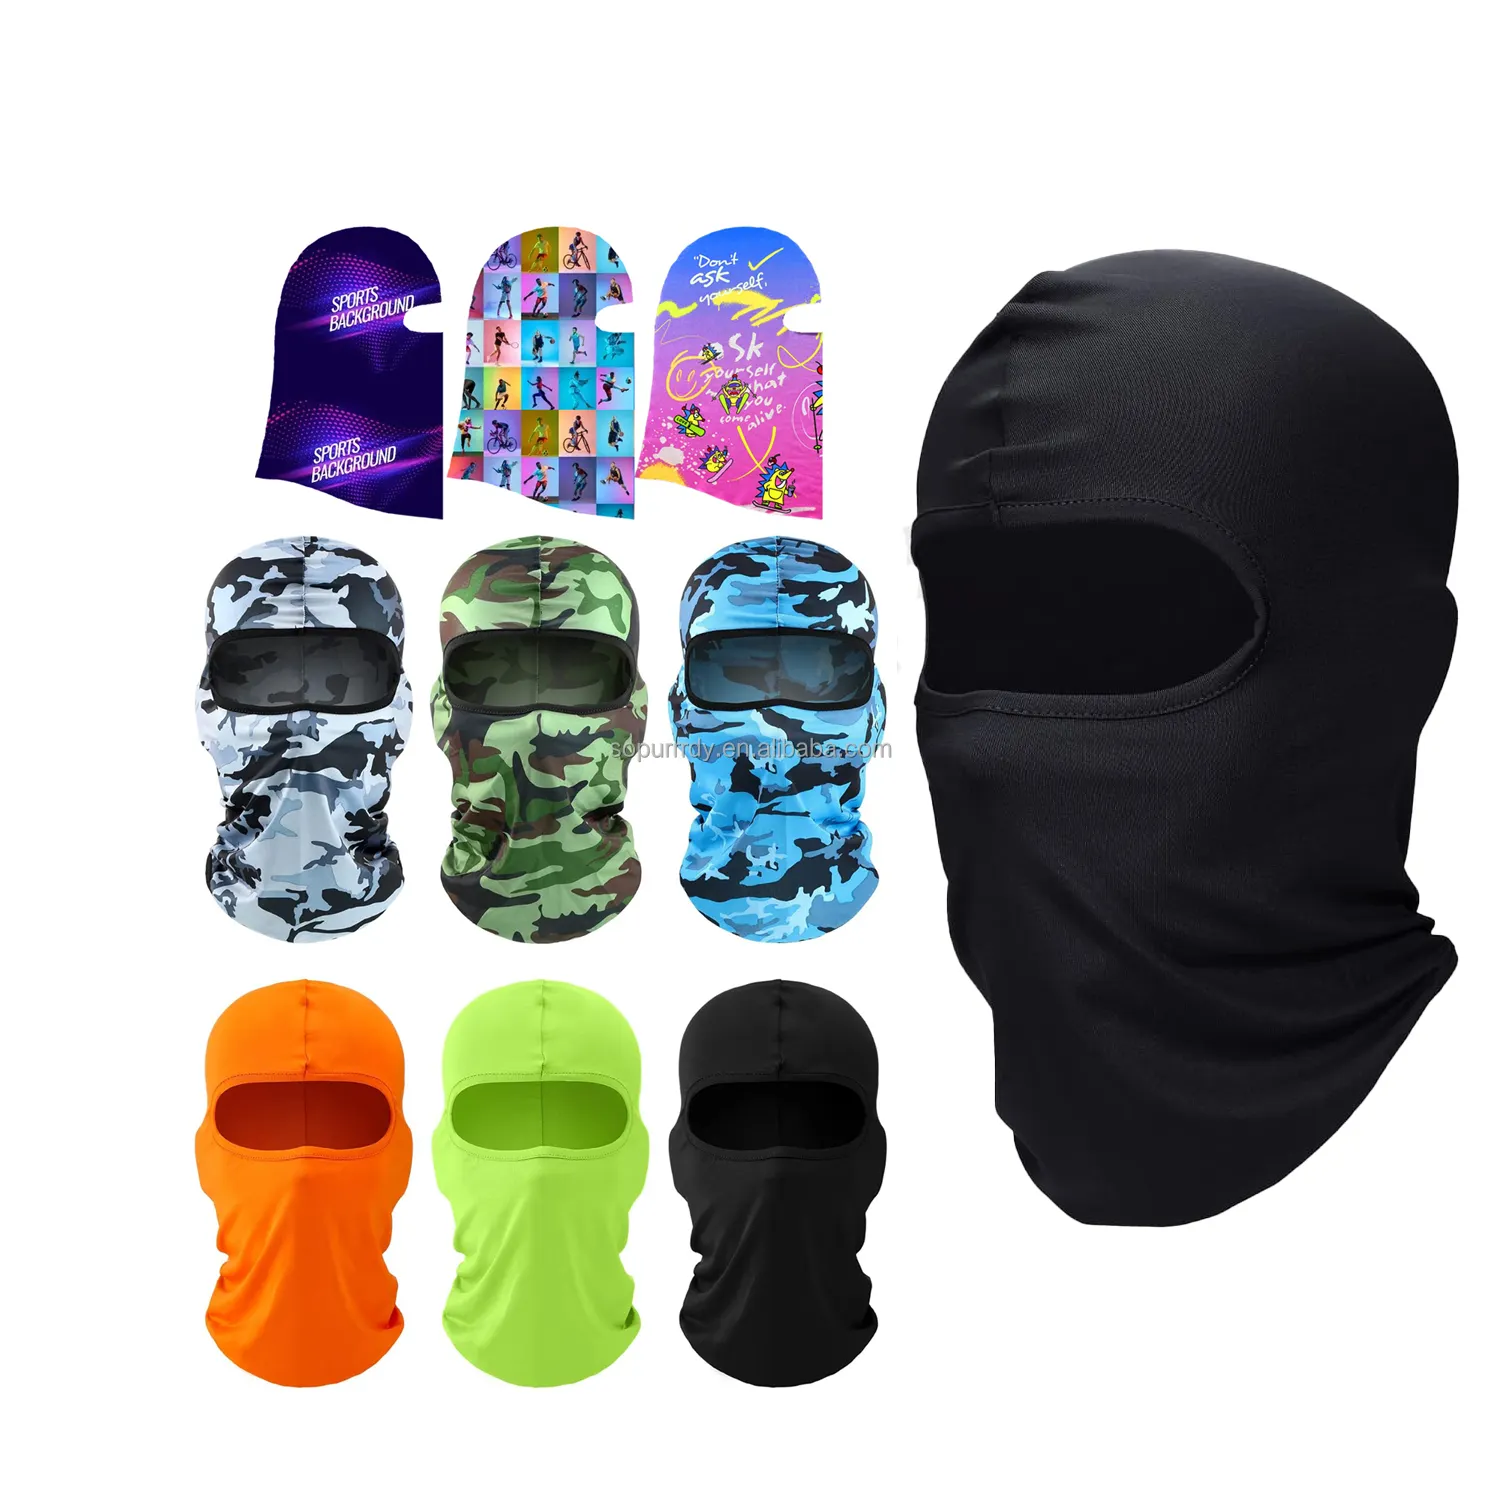 Individuelles Logo Ski-Maske Abdeckung vollbedeckungsmaske Sommer Gesichtsdeckung Eis Seide UV-Schutz Balaclava Damen Männer Outdoor-Sport